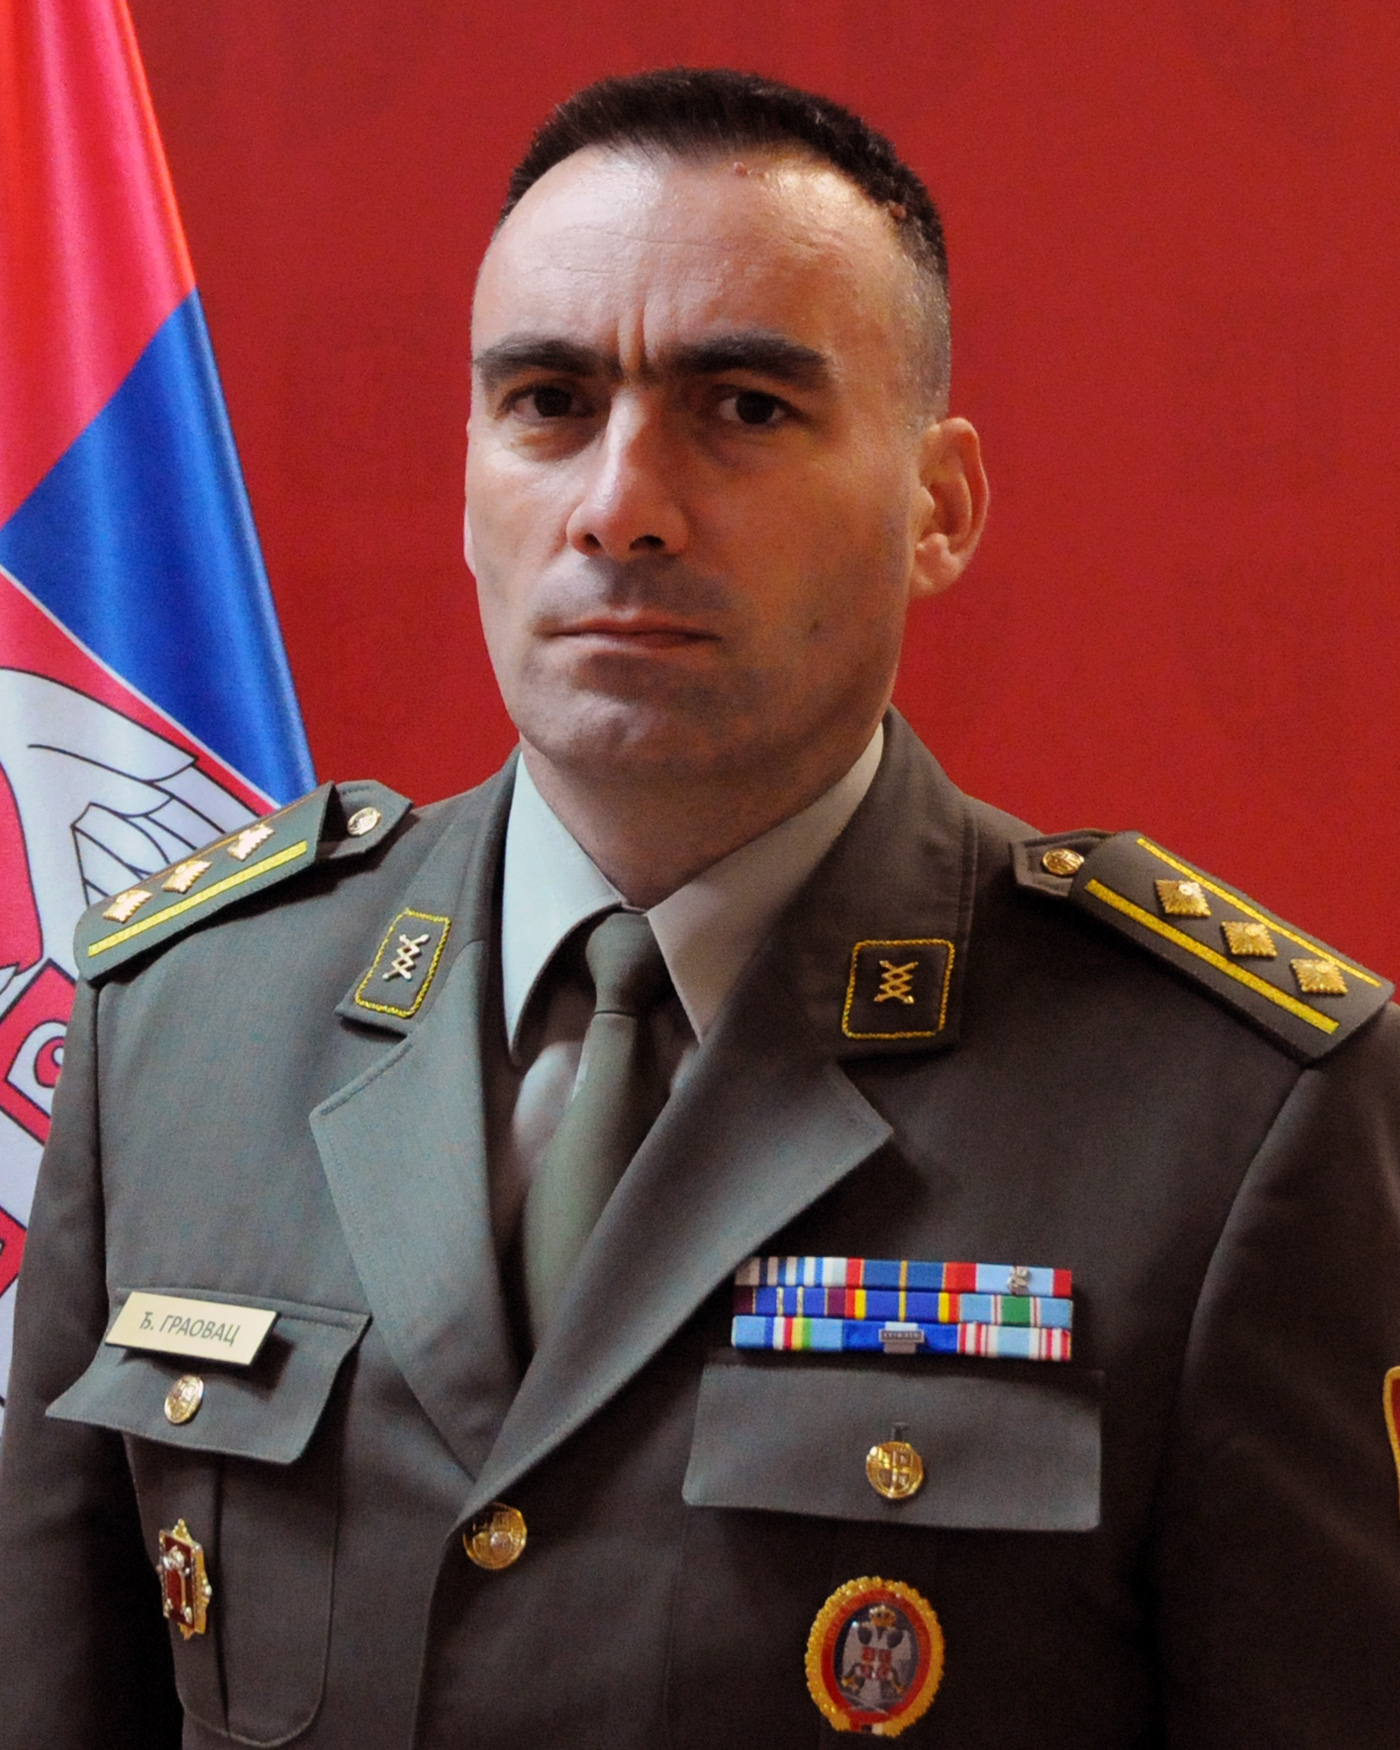 Colonel Đorđe Graovac